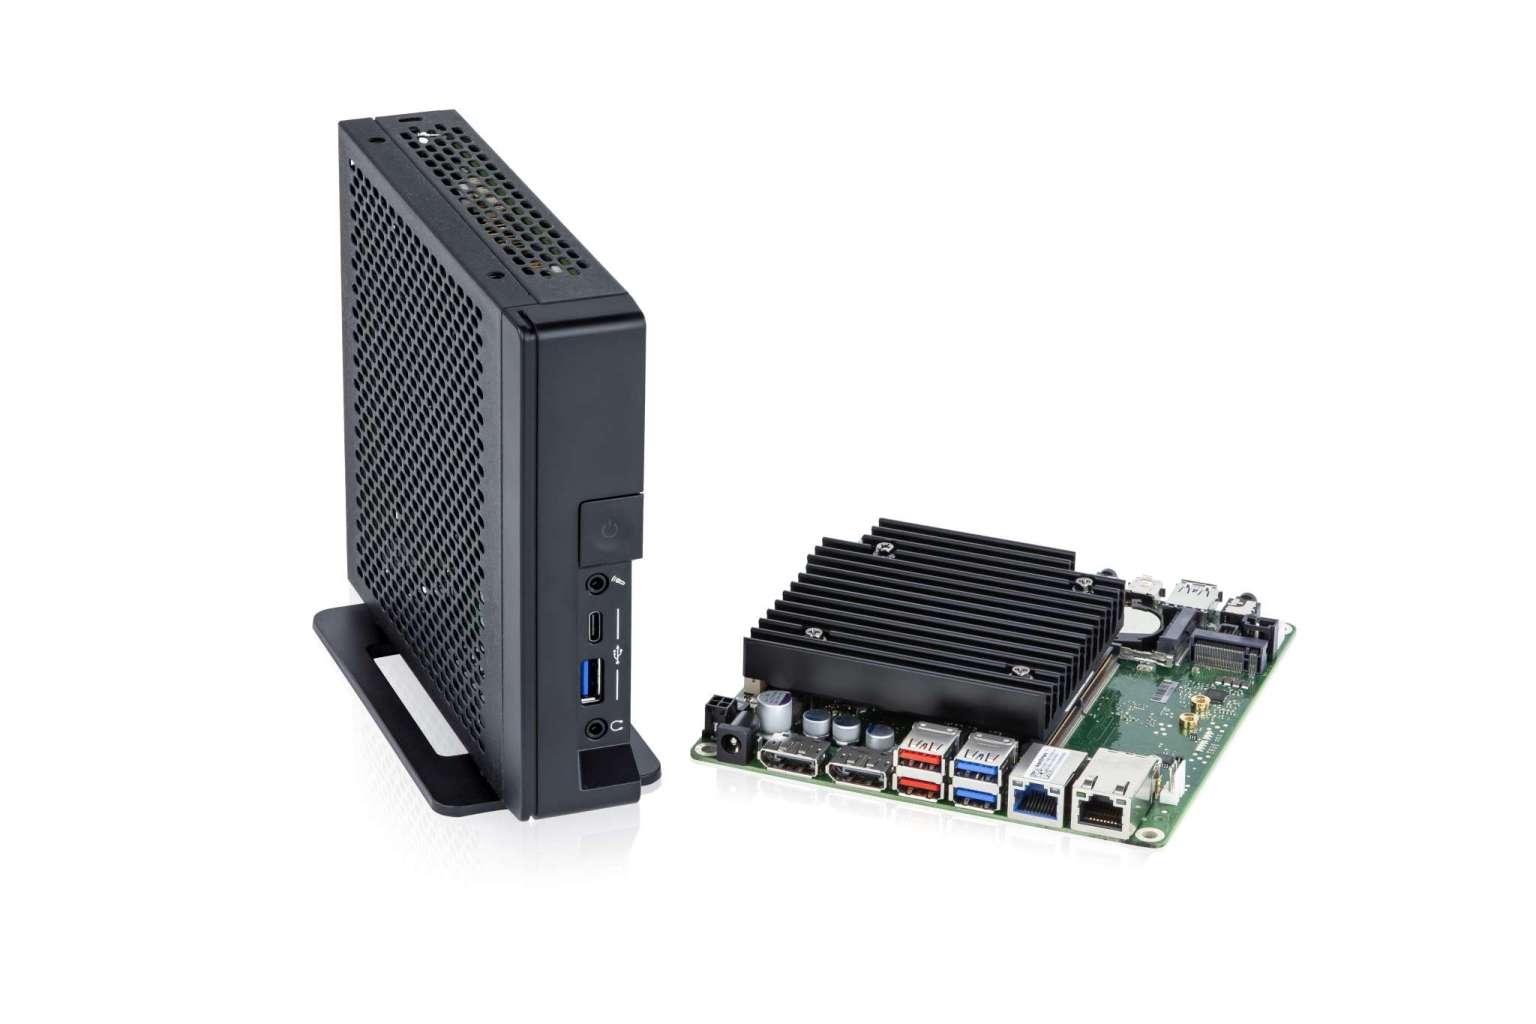 Micron 1 To SSD 1100 SATA 2,5” NAND OEM – STATION DE TRAVAIL